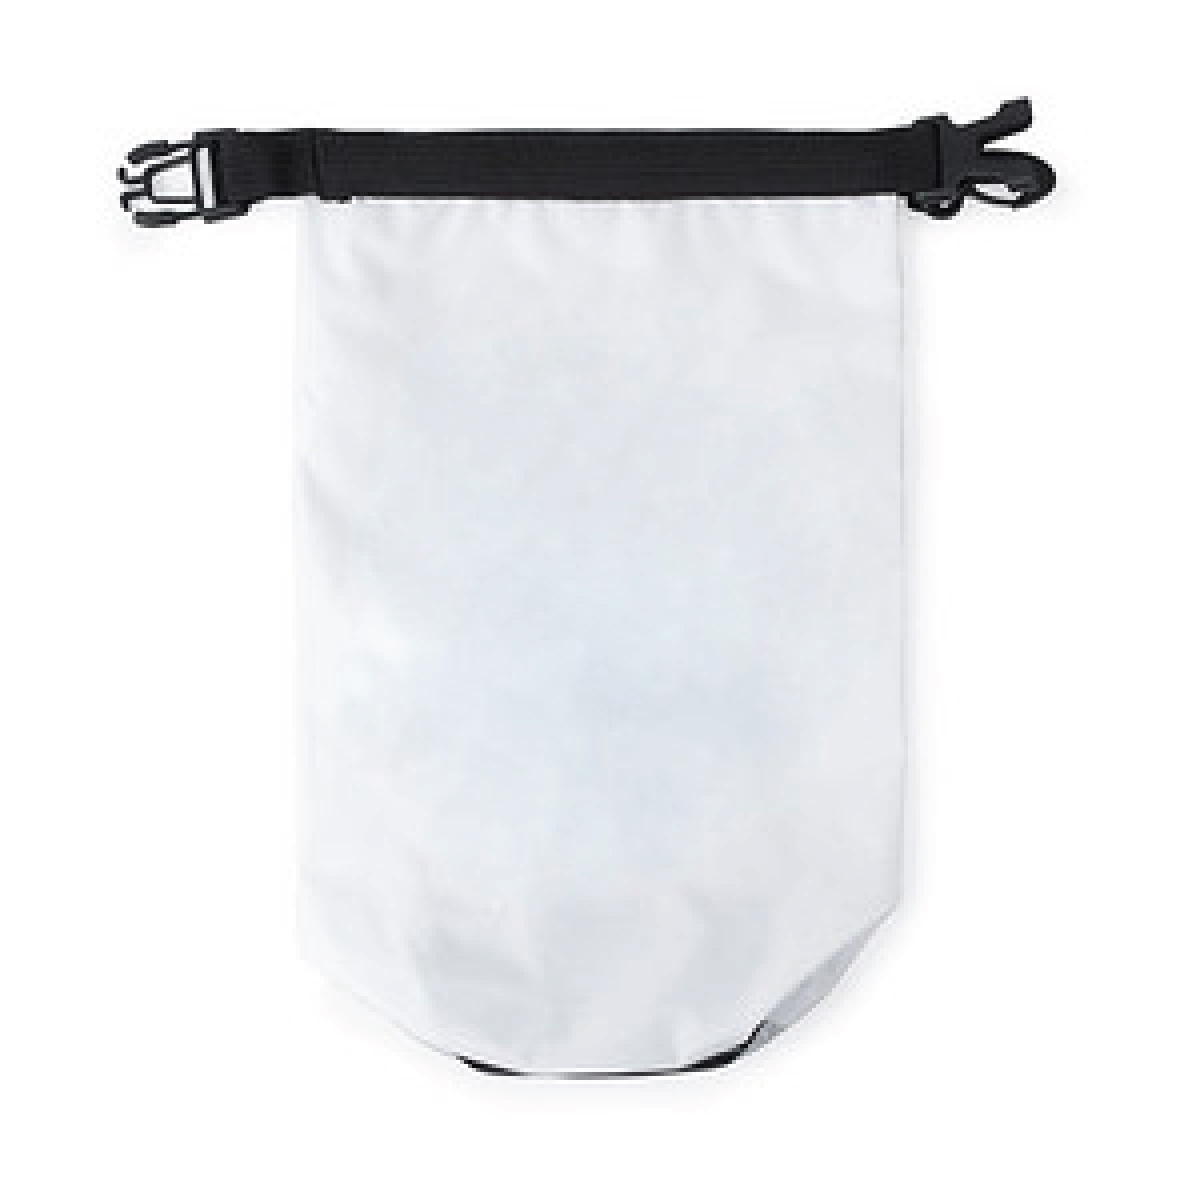 Full Color Sublimation 2 Liter Dry Bag